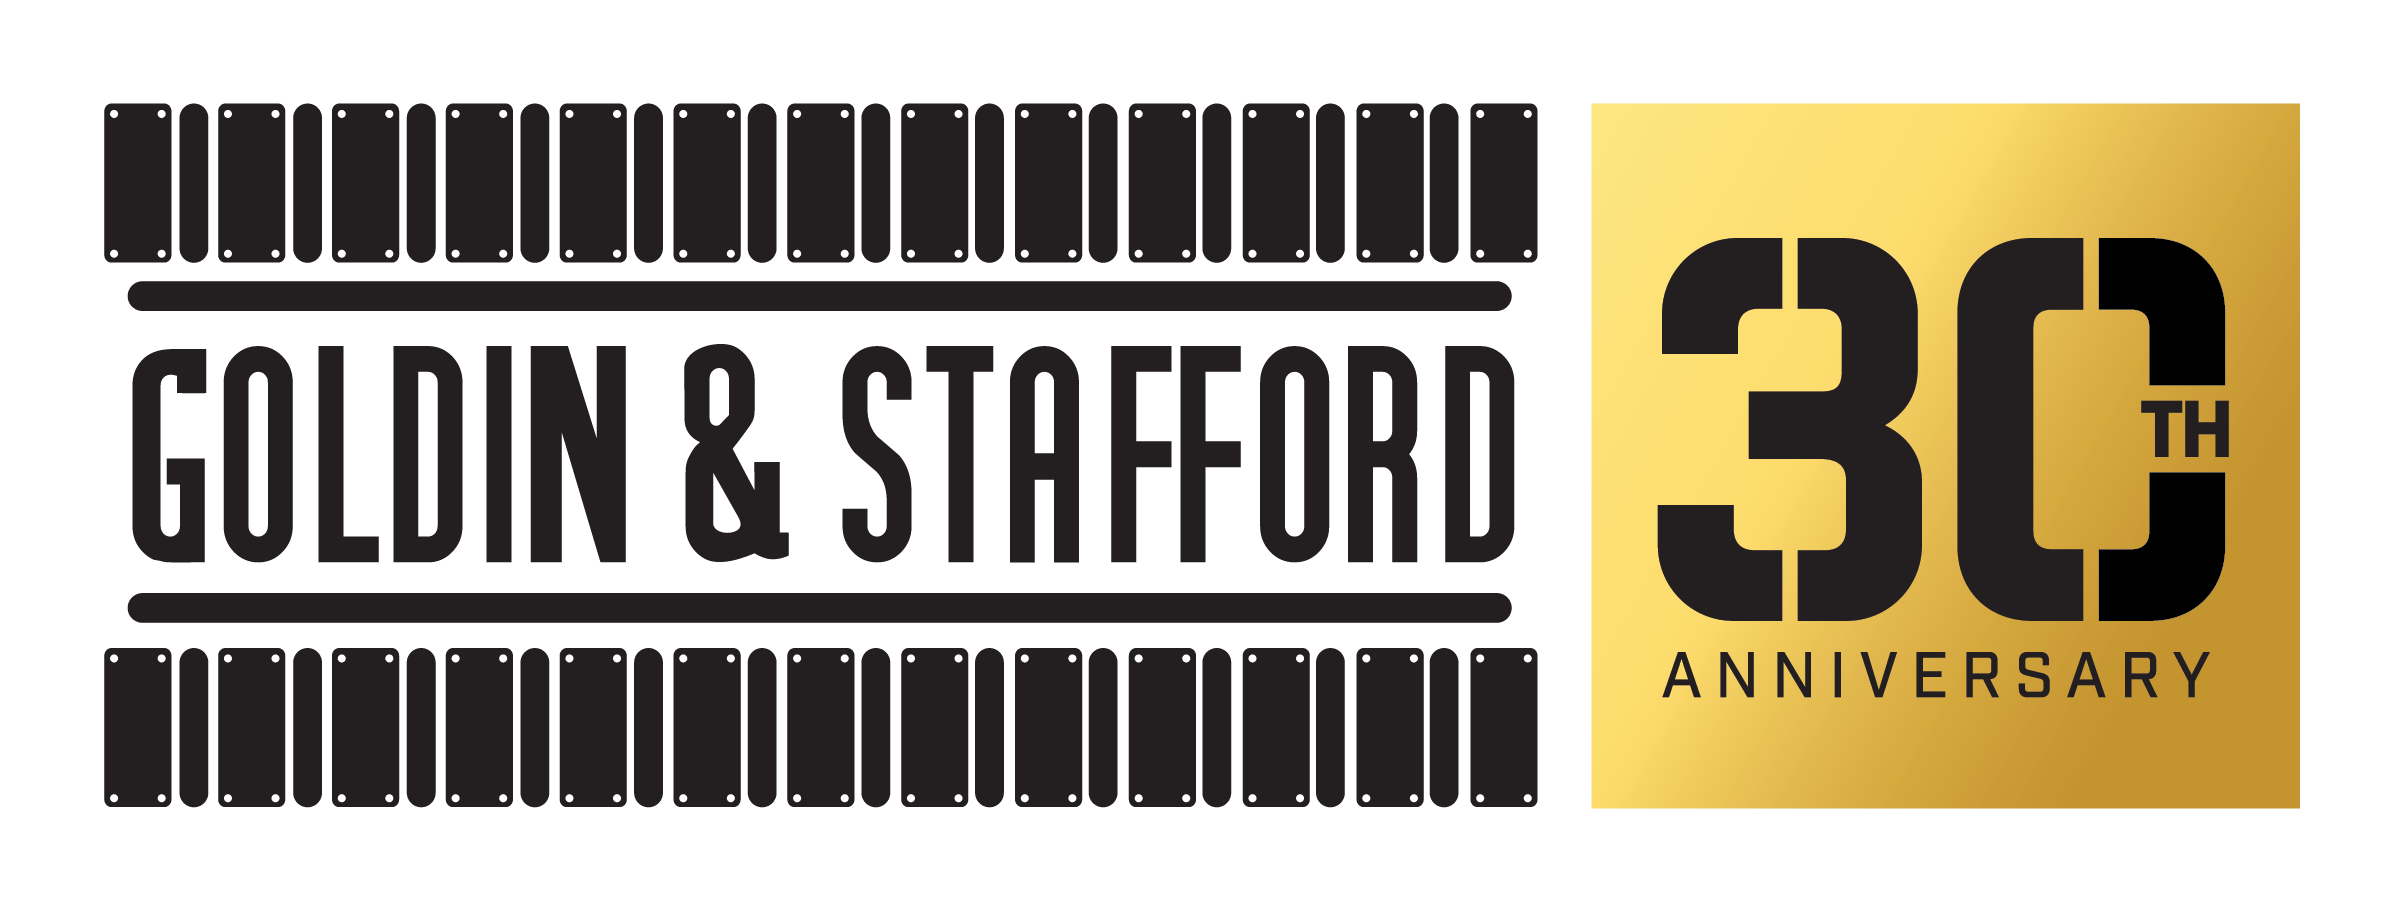 Goldin & Stafford 30th Logo